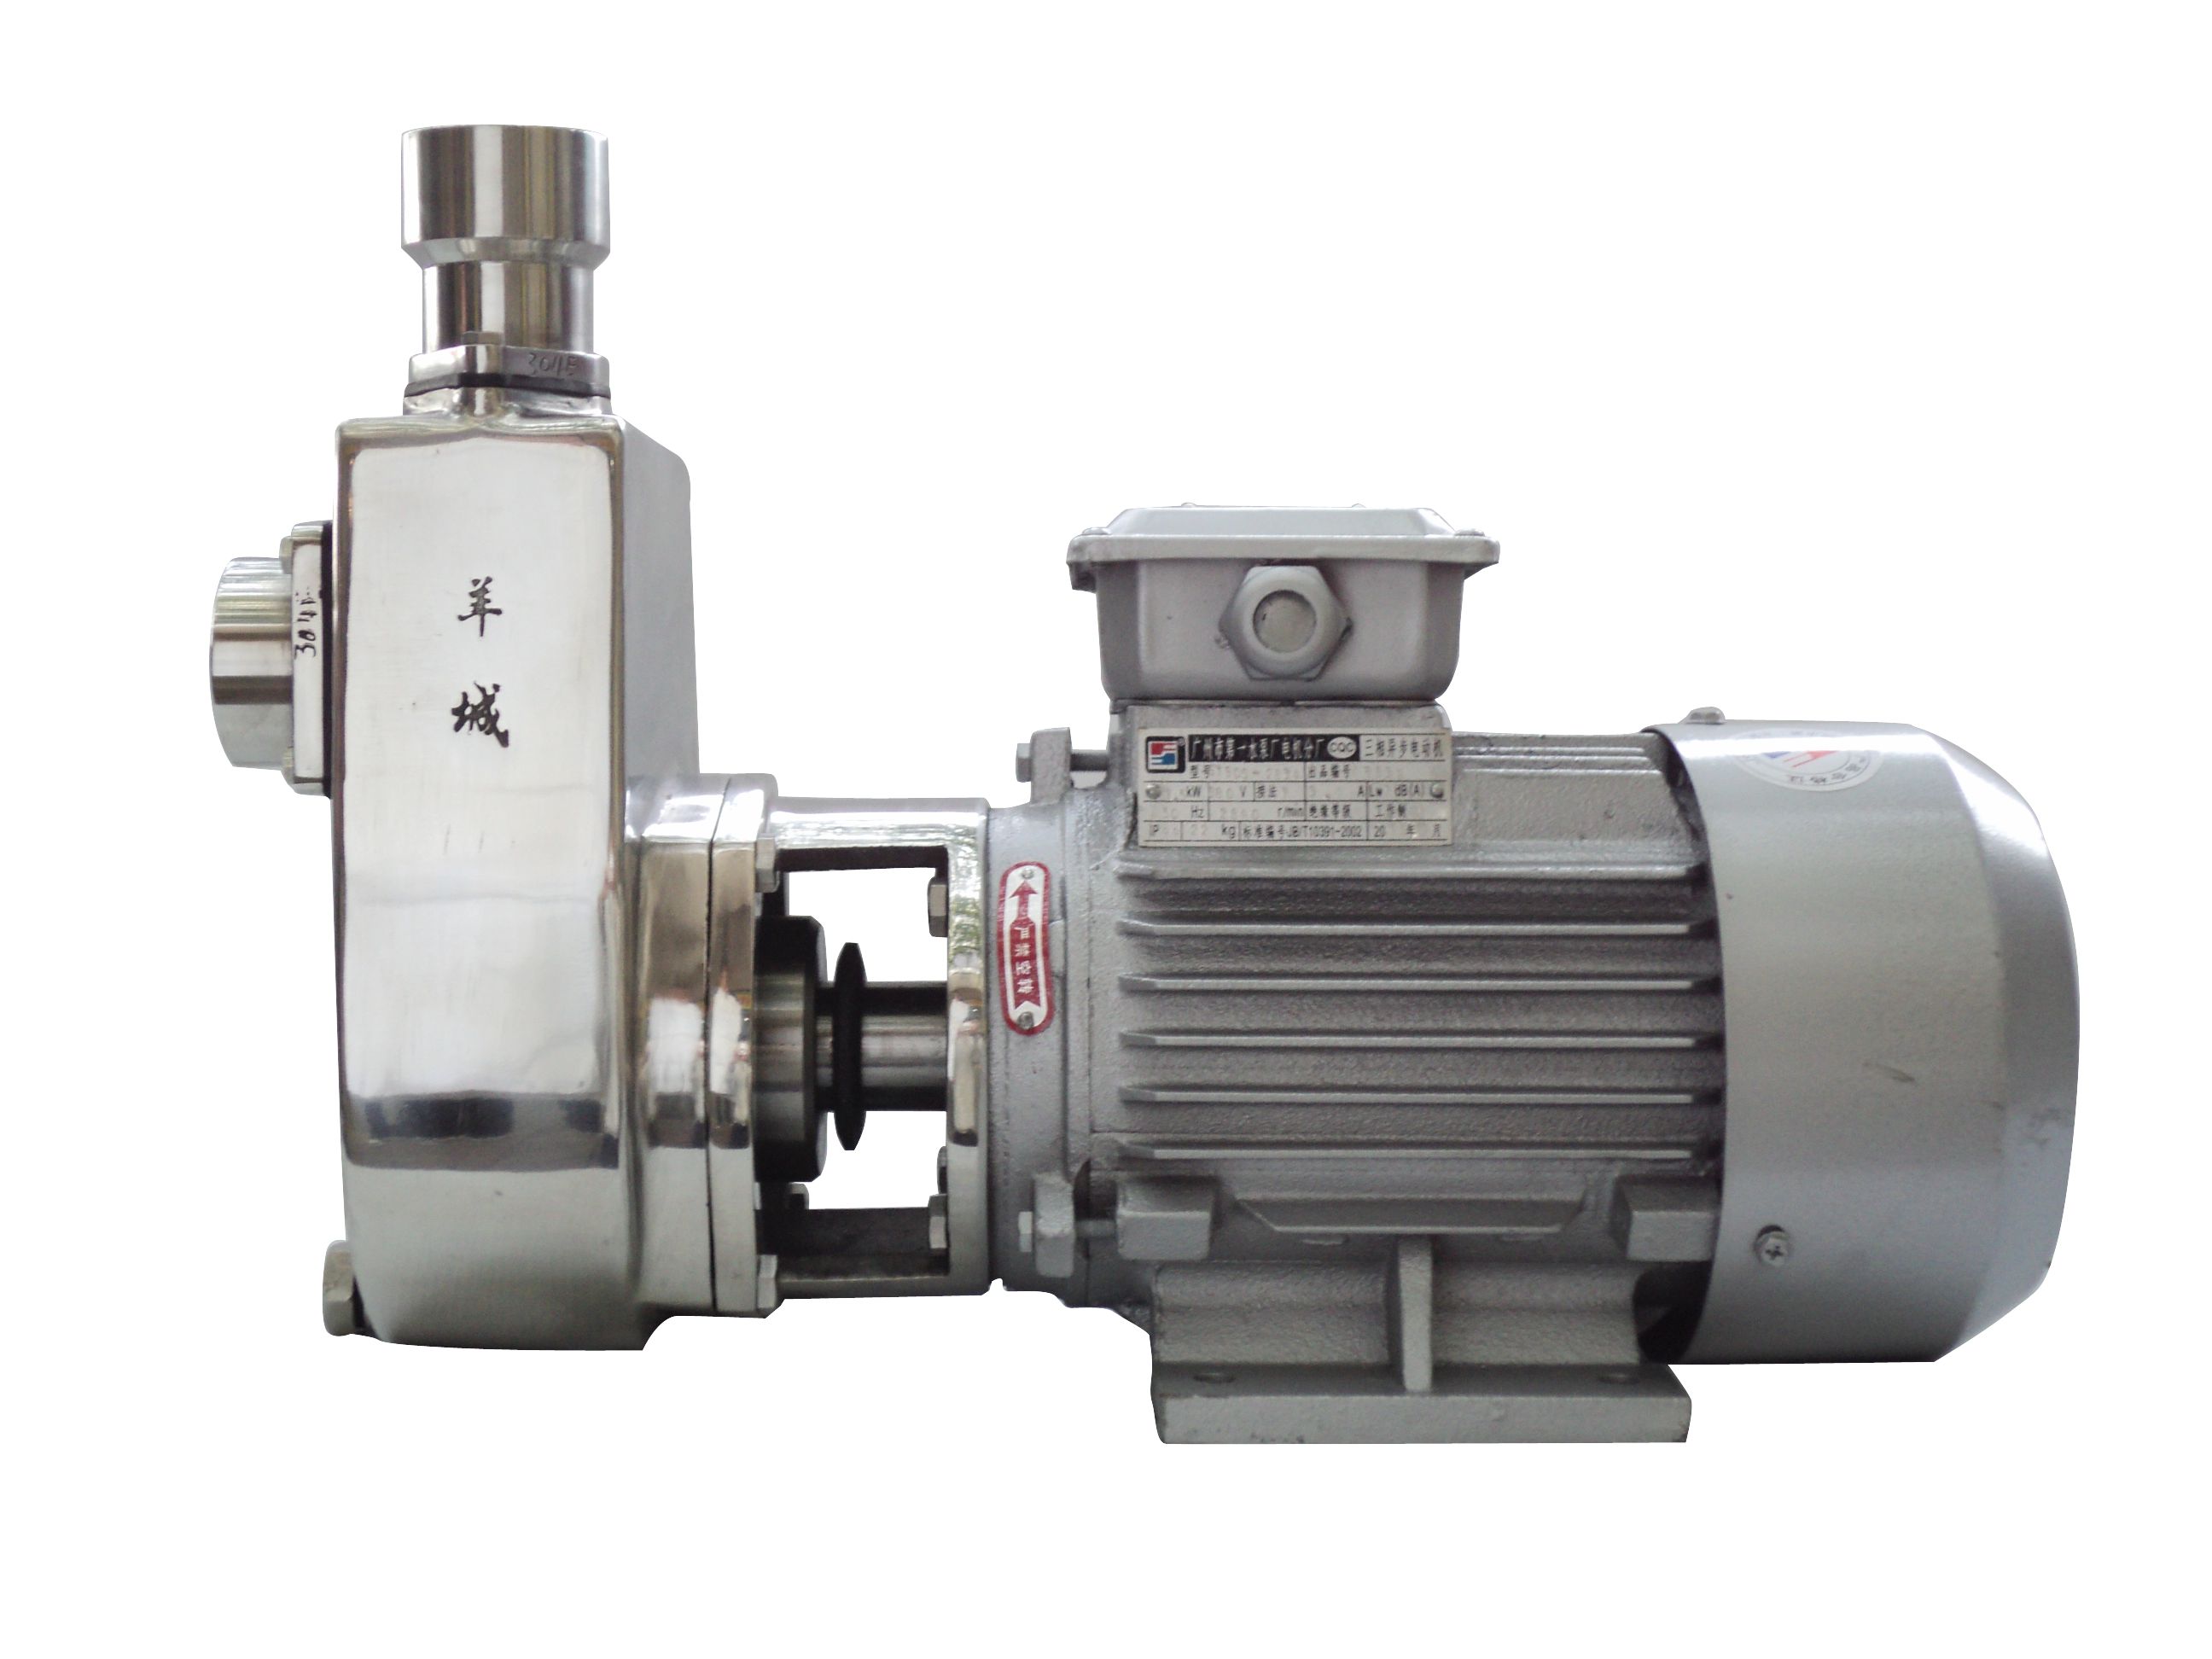 羊城水泵|40FX-13|FX耐腐蚀自吸泵|羊城泵业|广州羊城水泵厂